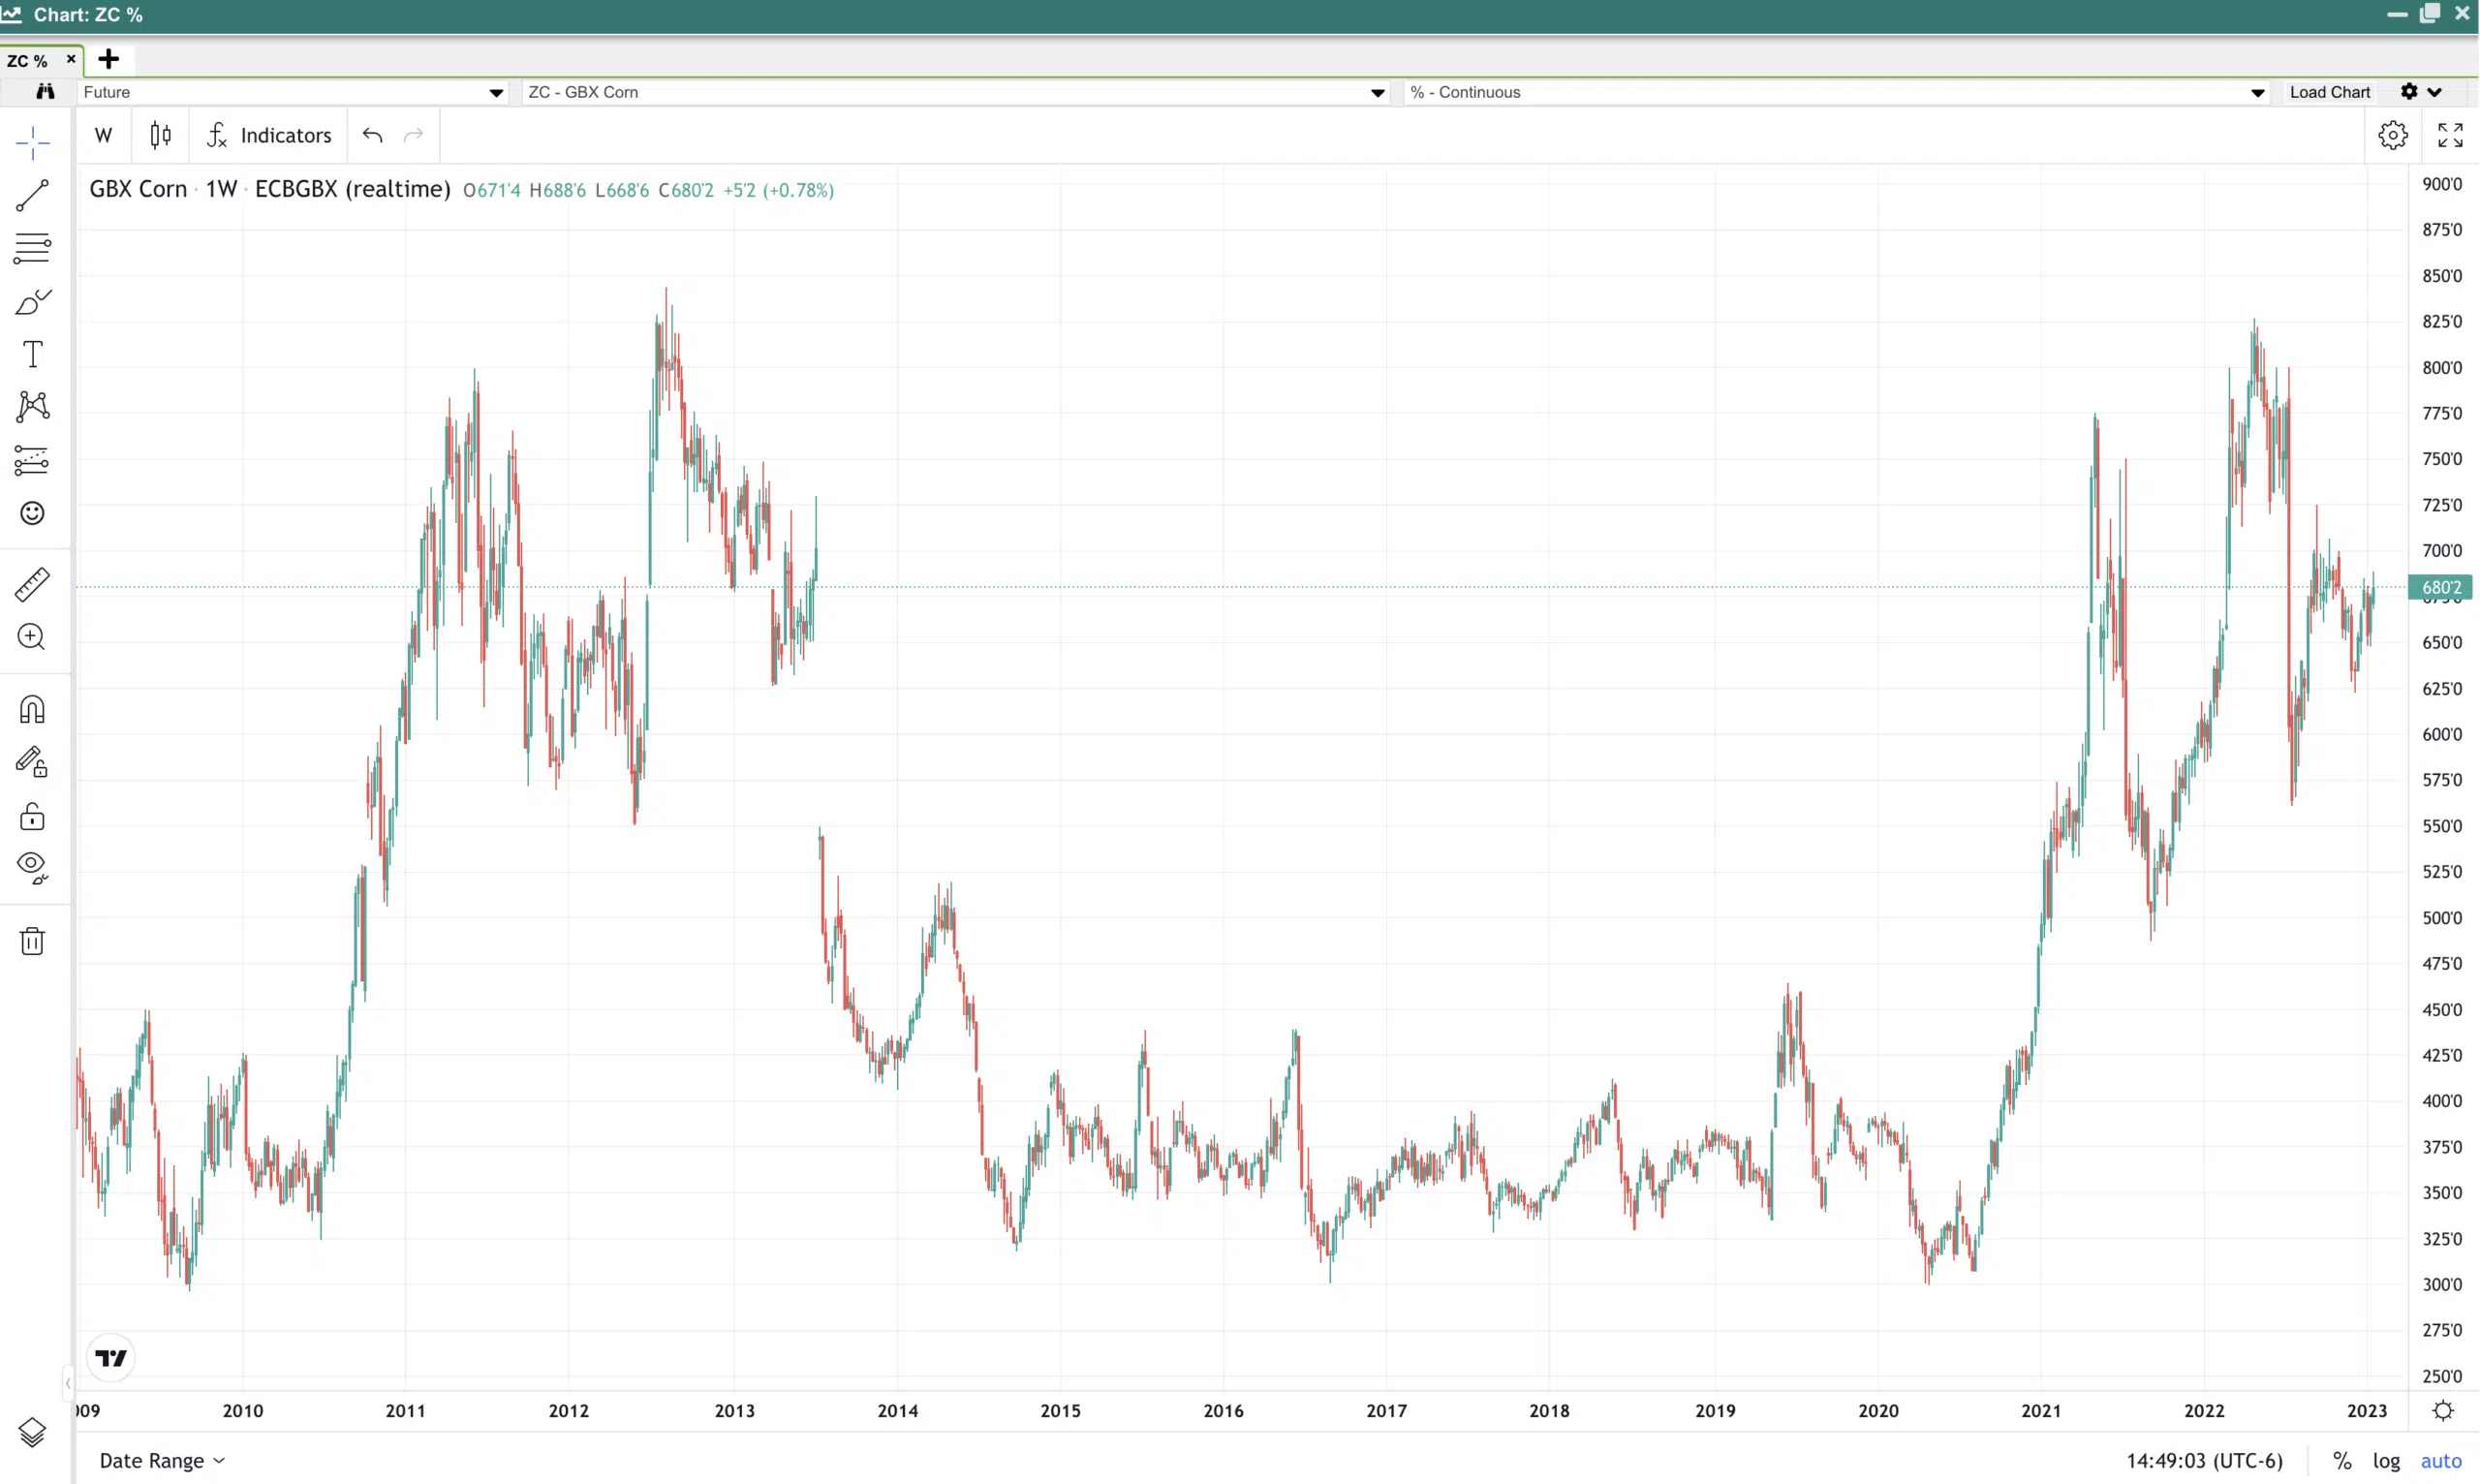 12 year corn price history chart